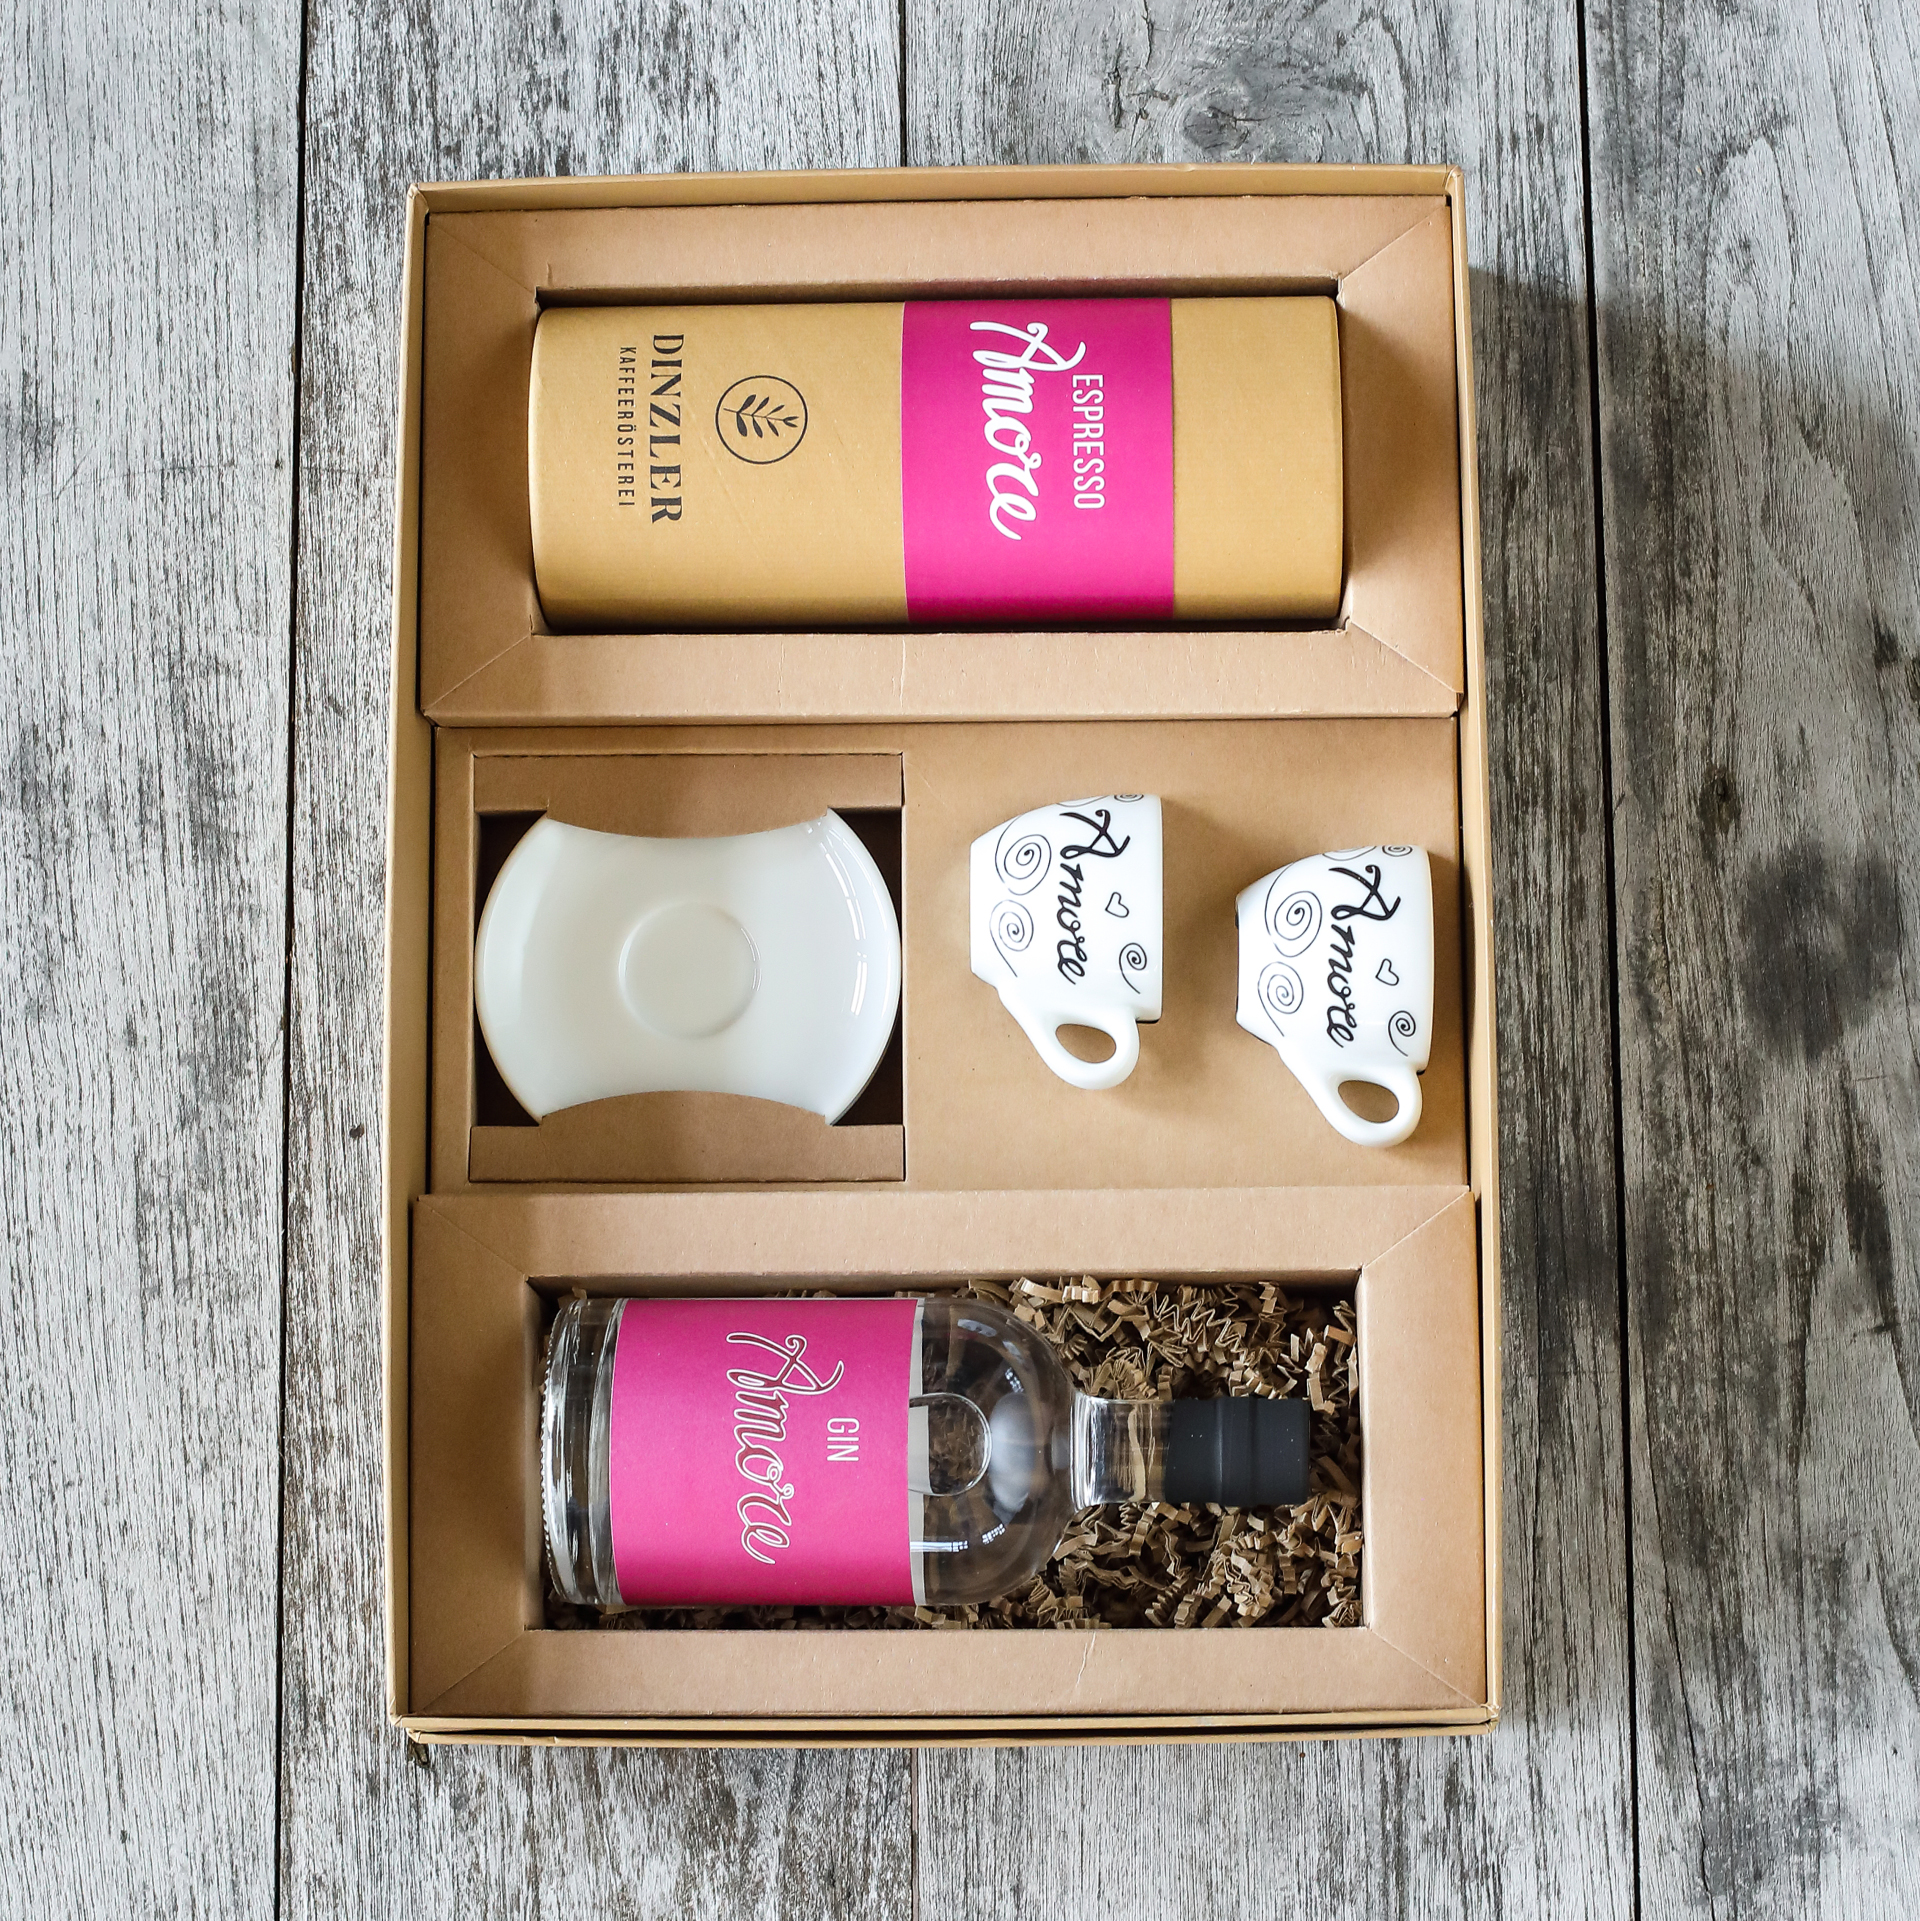 Produktbild DINZLER Geschenkbox Amore “Felice”| DINZLER Kaffeerösterei